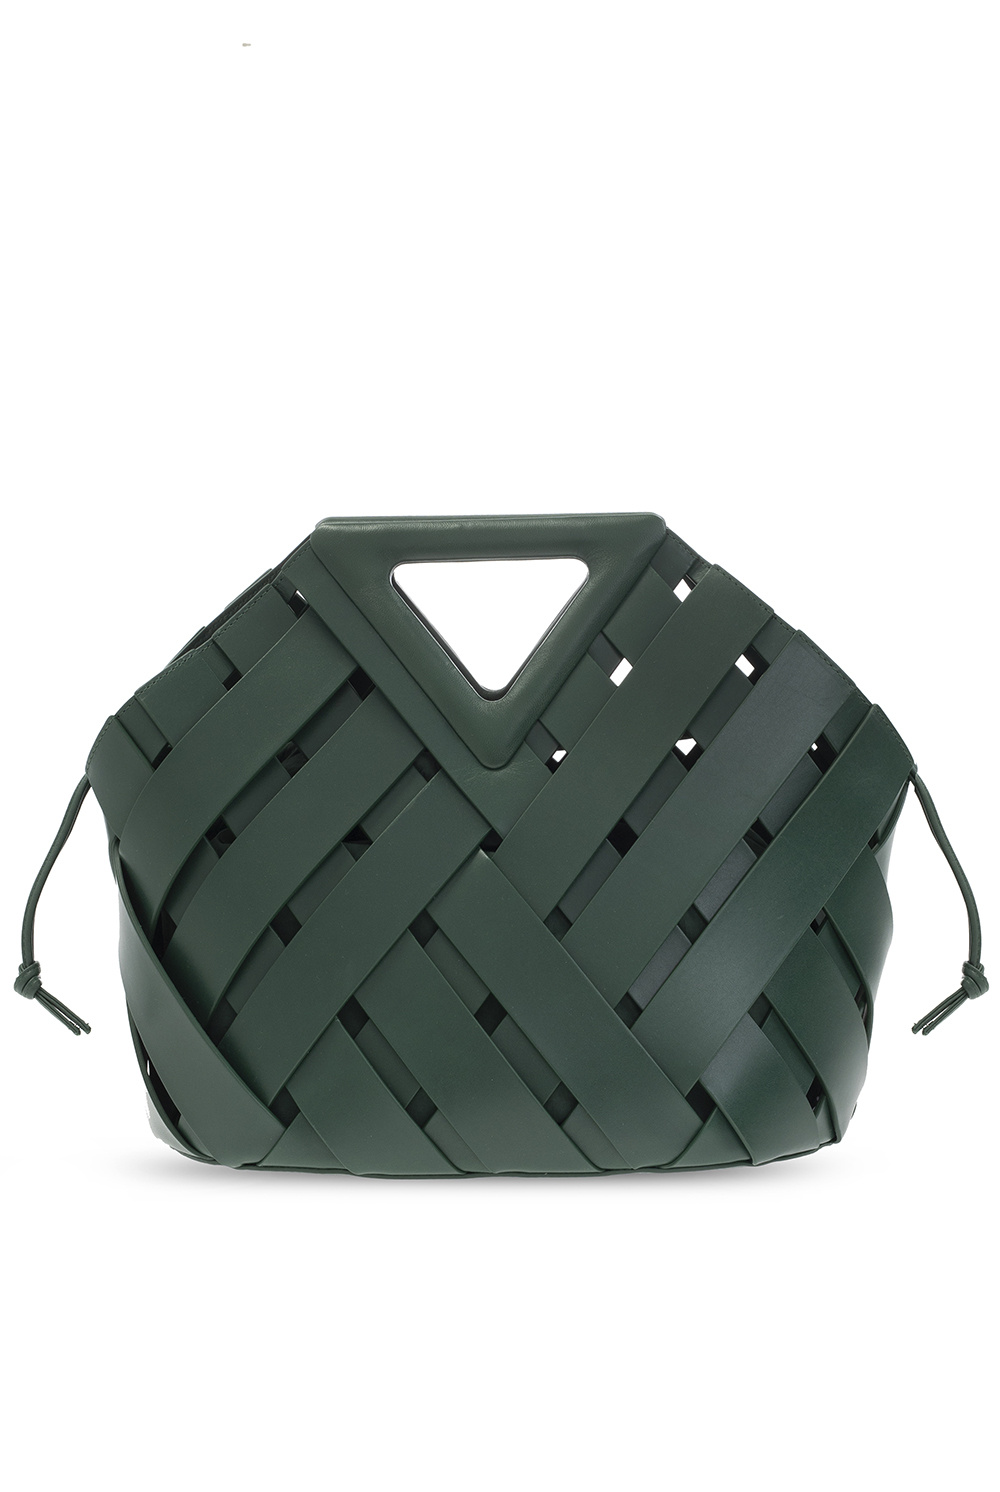 Bottega Veneta ‘Point’ handbag